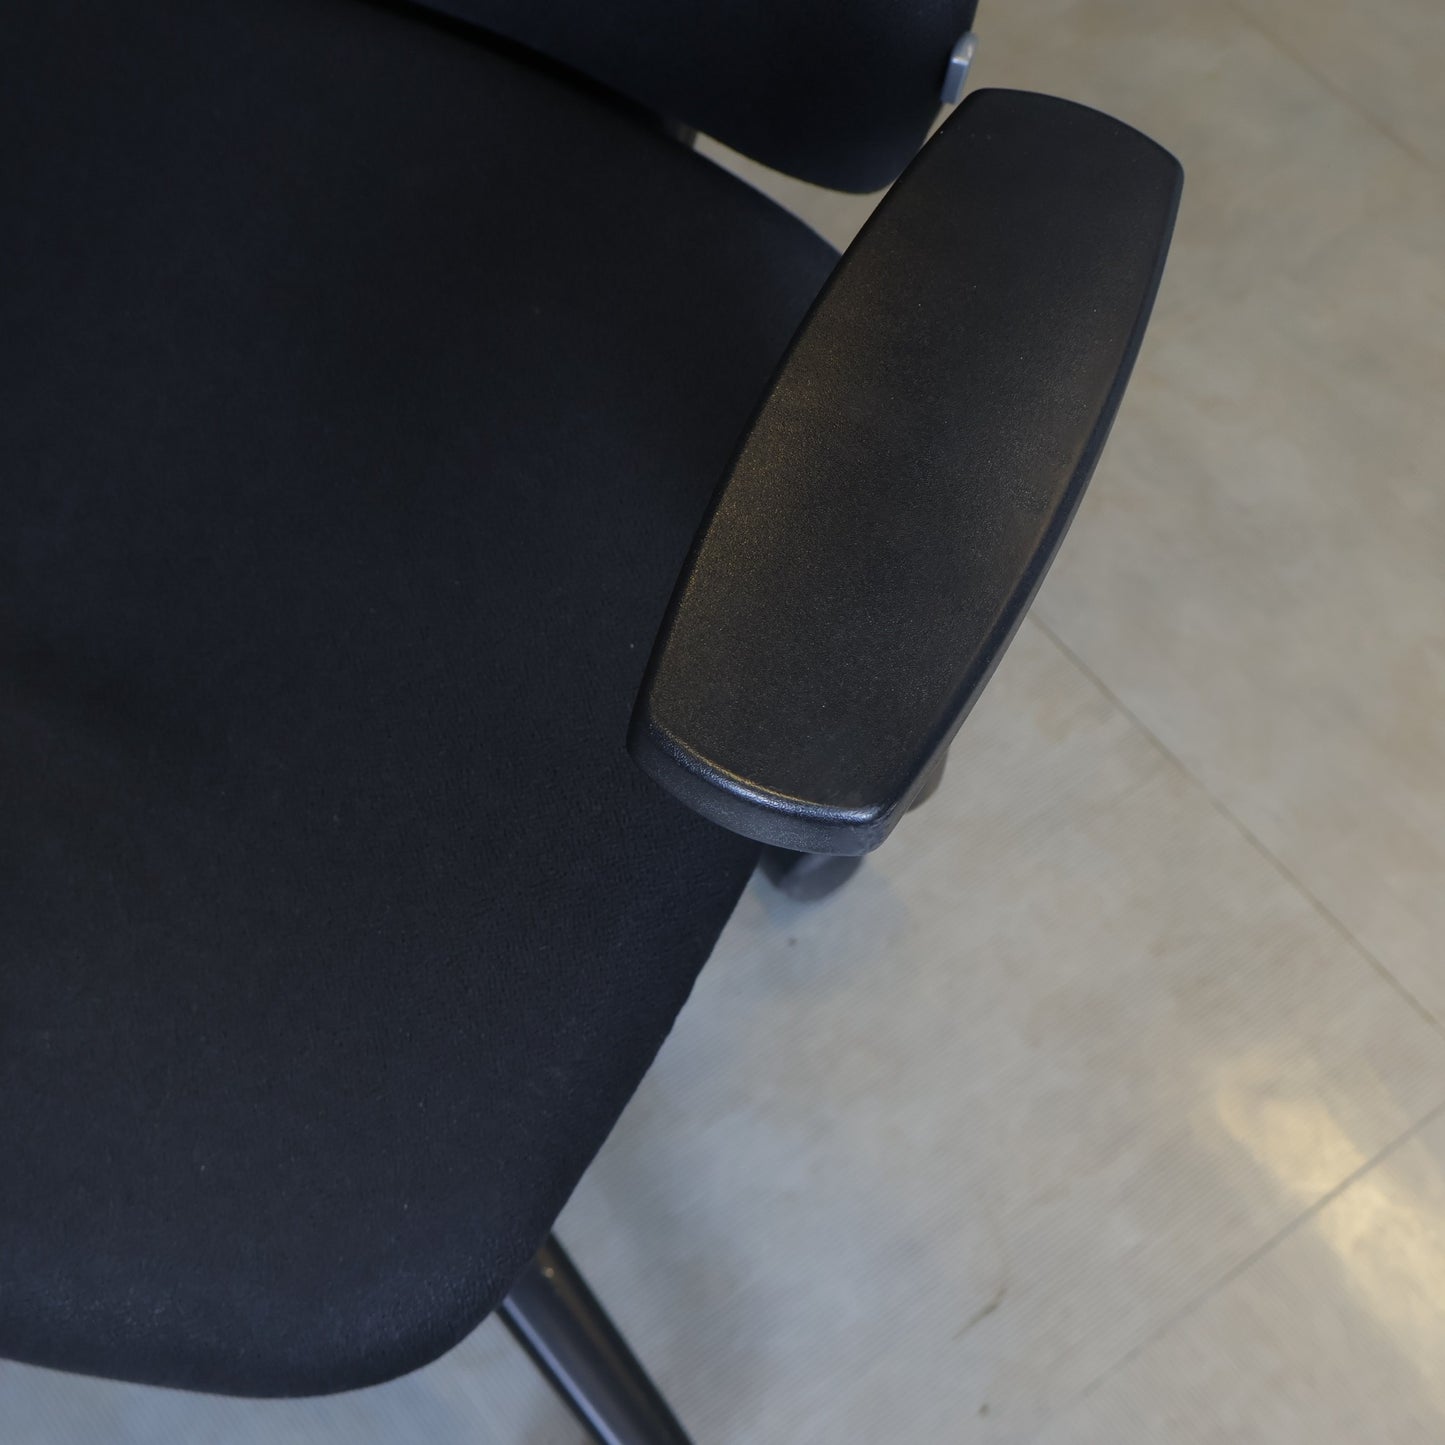 Nyrenset | Sitland kontorstol i fargen sort